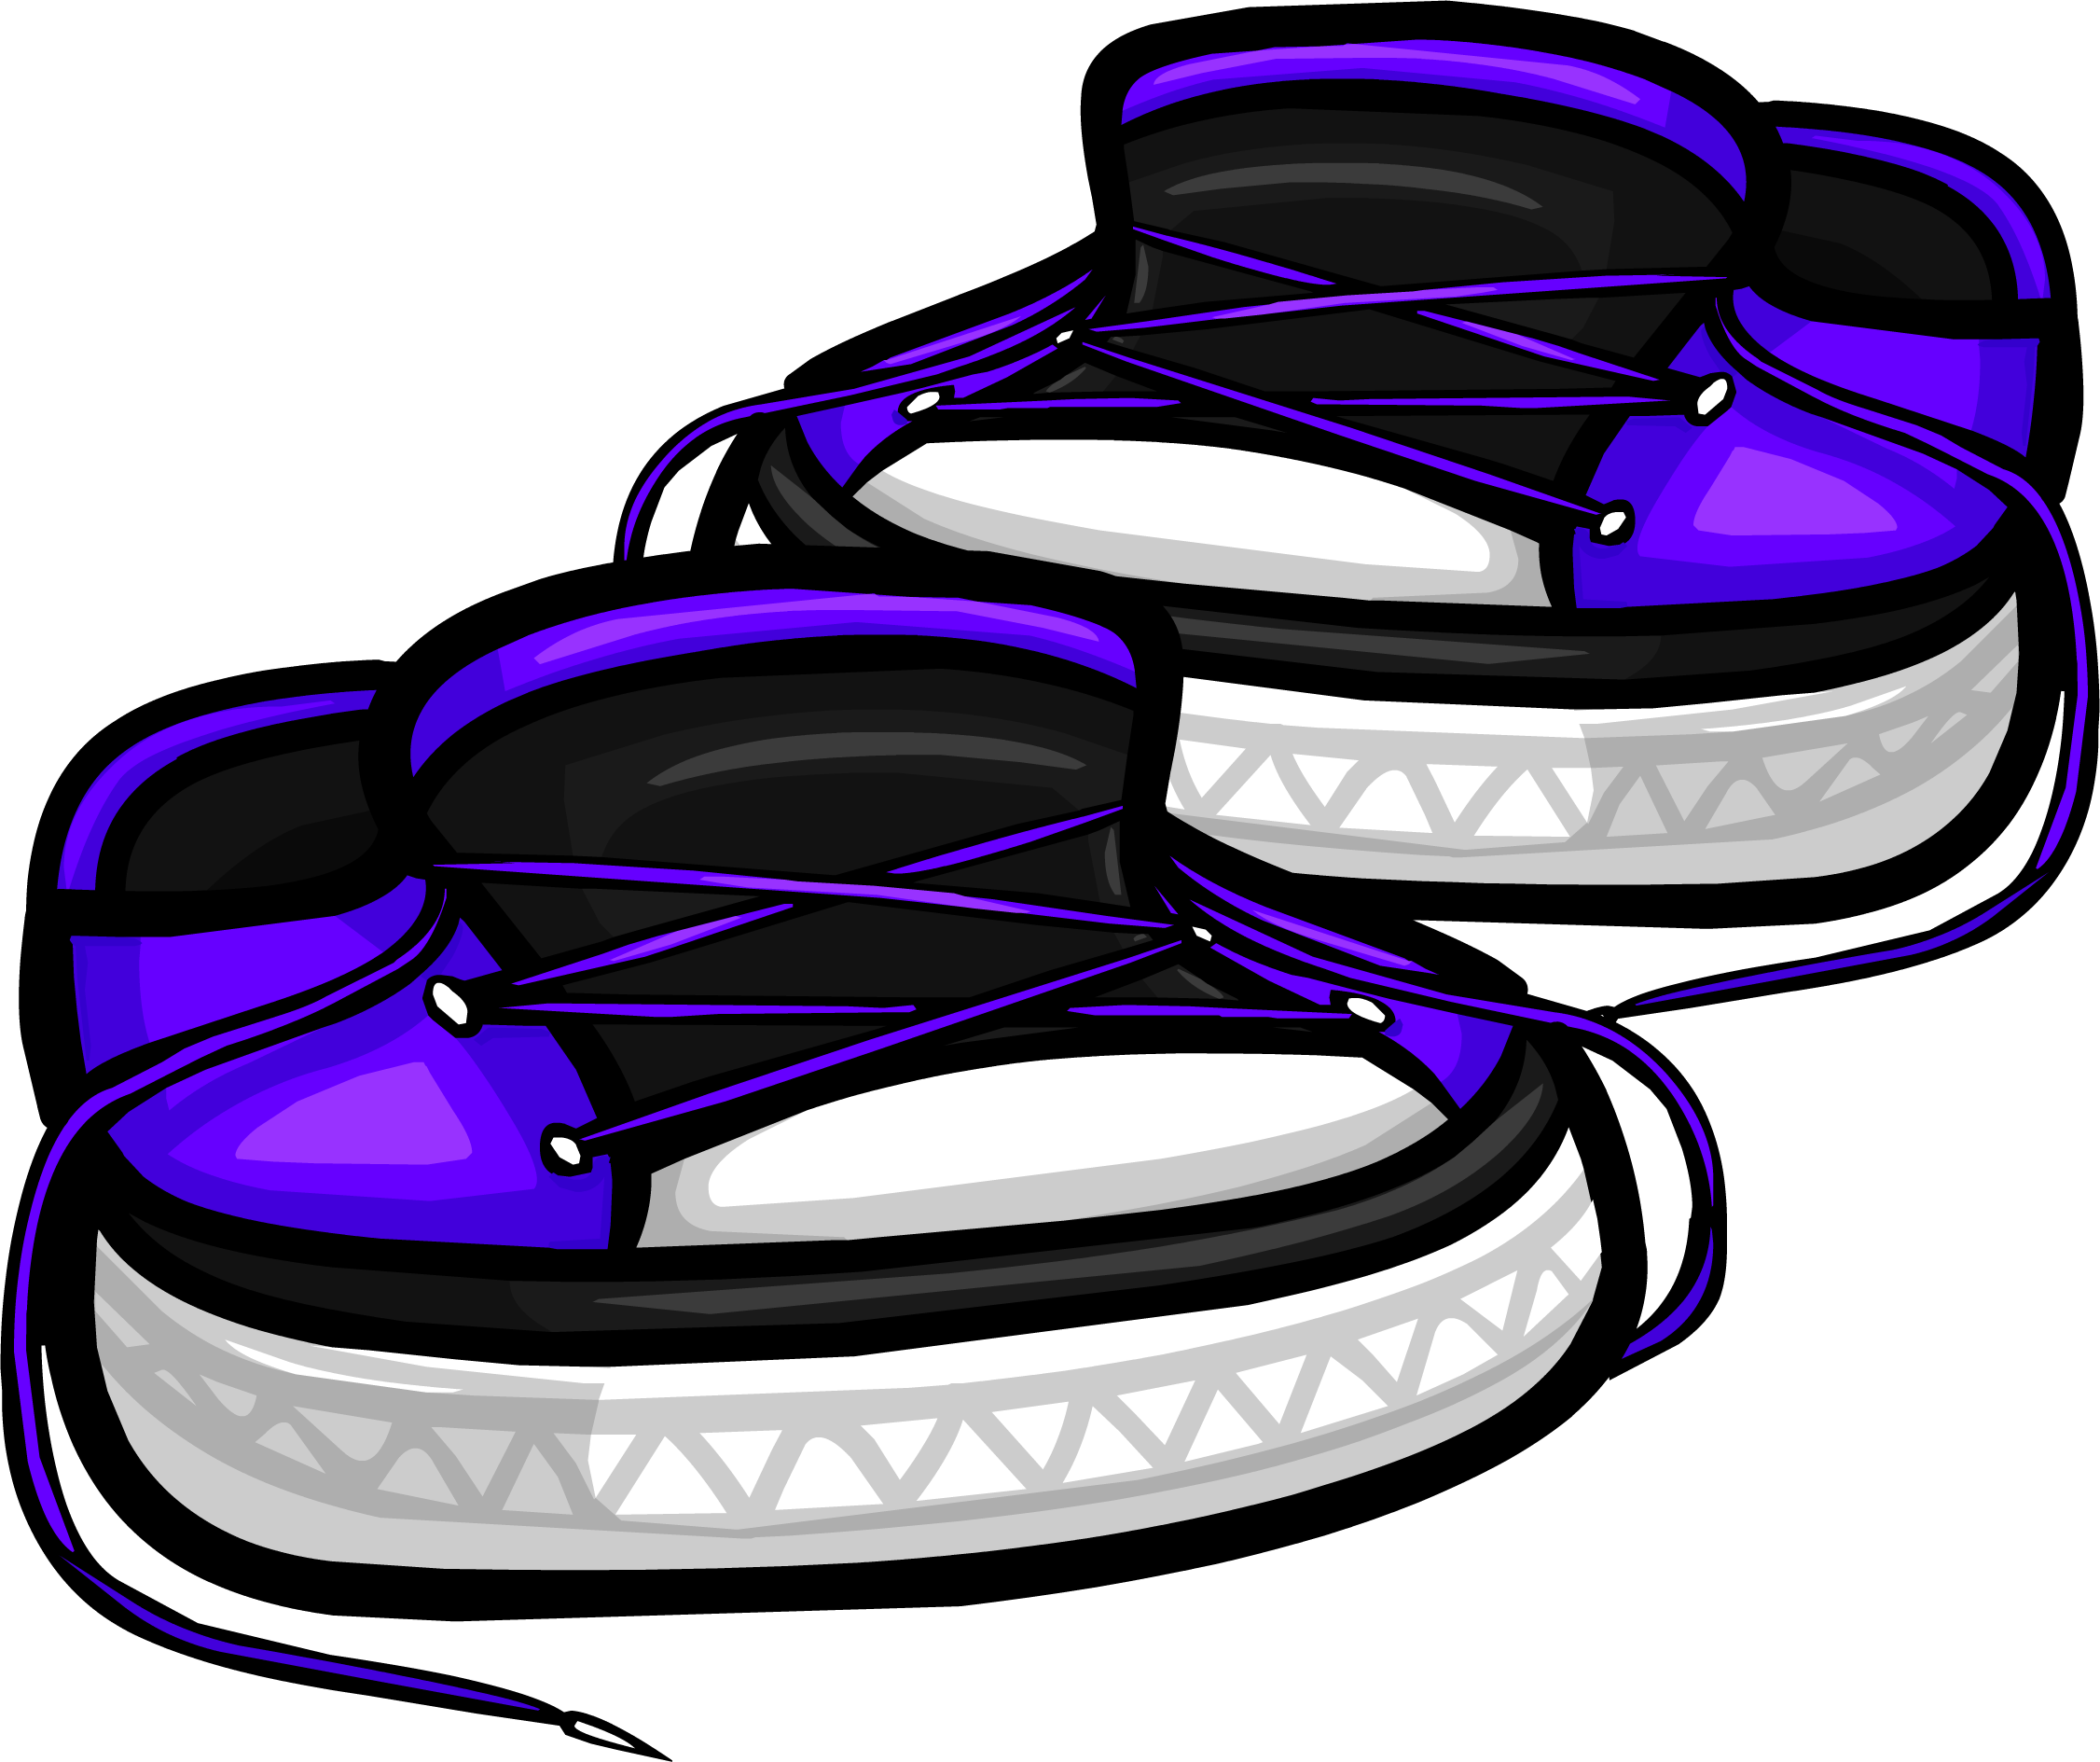 clipart shoes purple